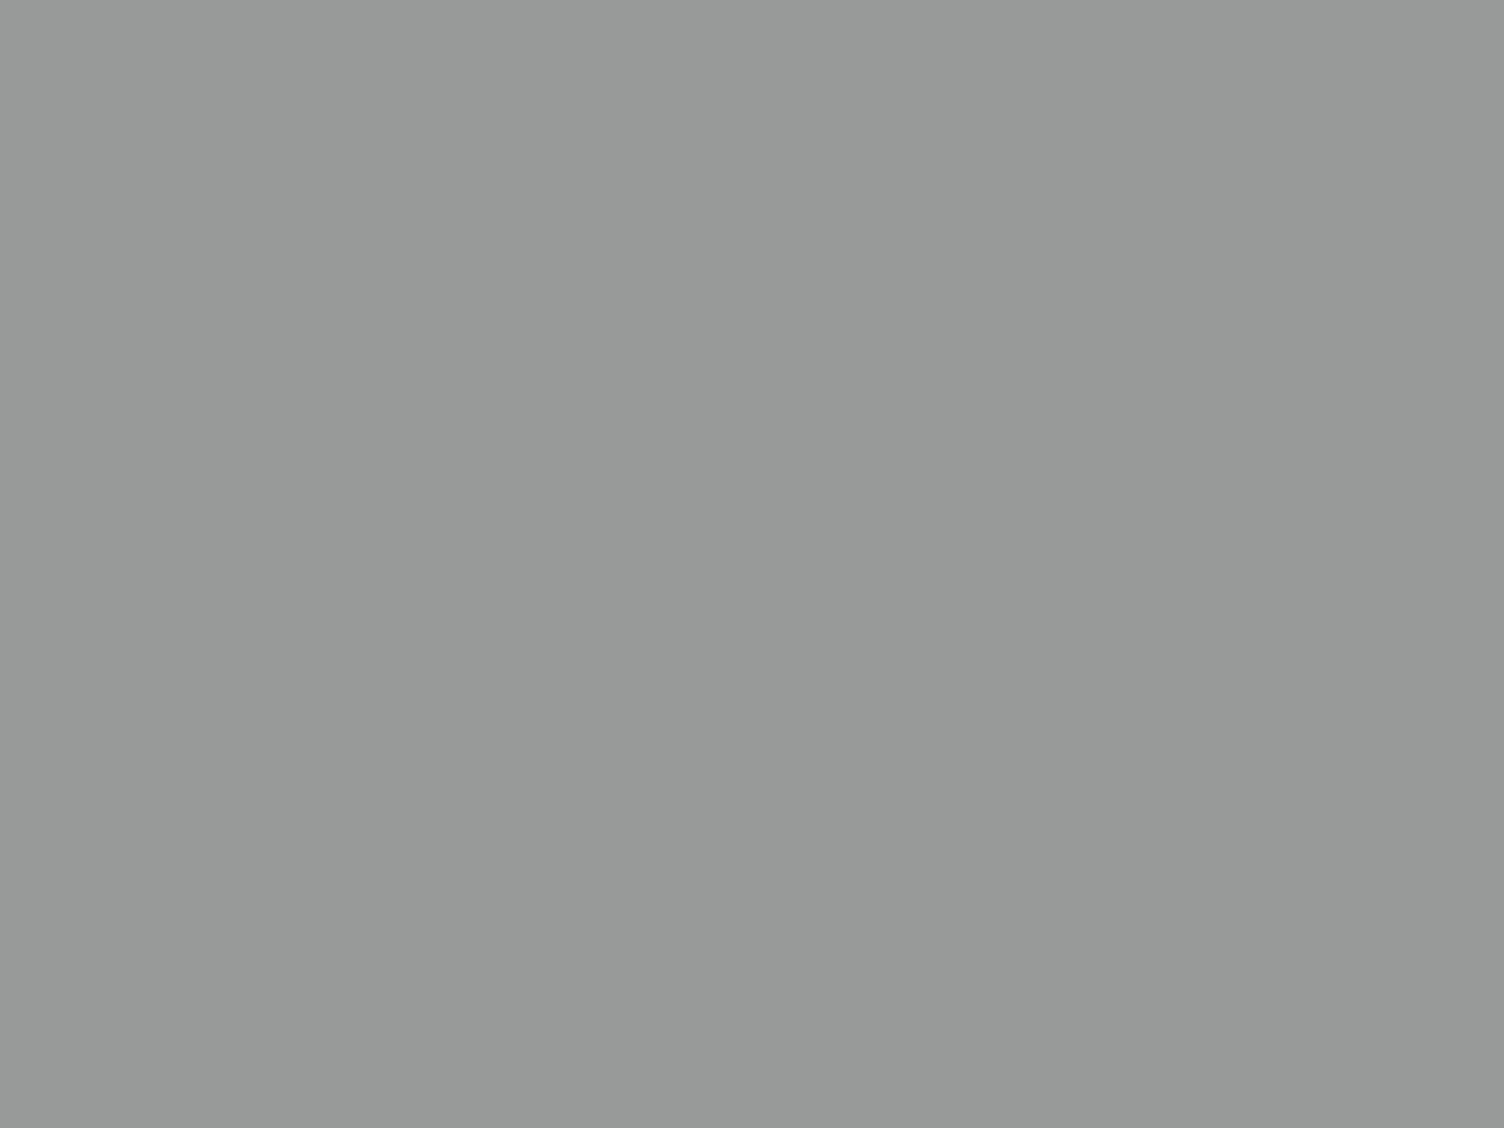 Кудыргэ, курганный могильник. Восточная часть памятника. Вид с юго-юго-запада. Фотография: Музей археологии и этнографии Алтая Алтайского государственного университета, Барнаул